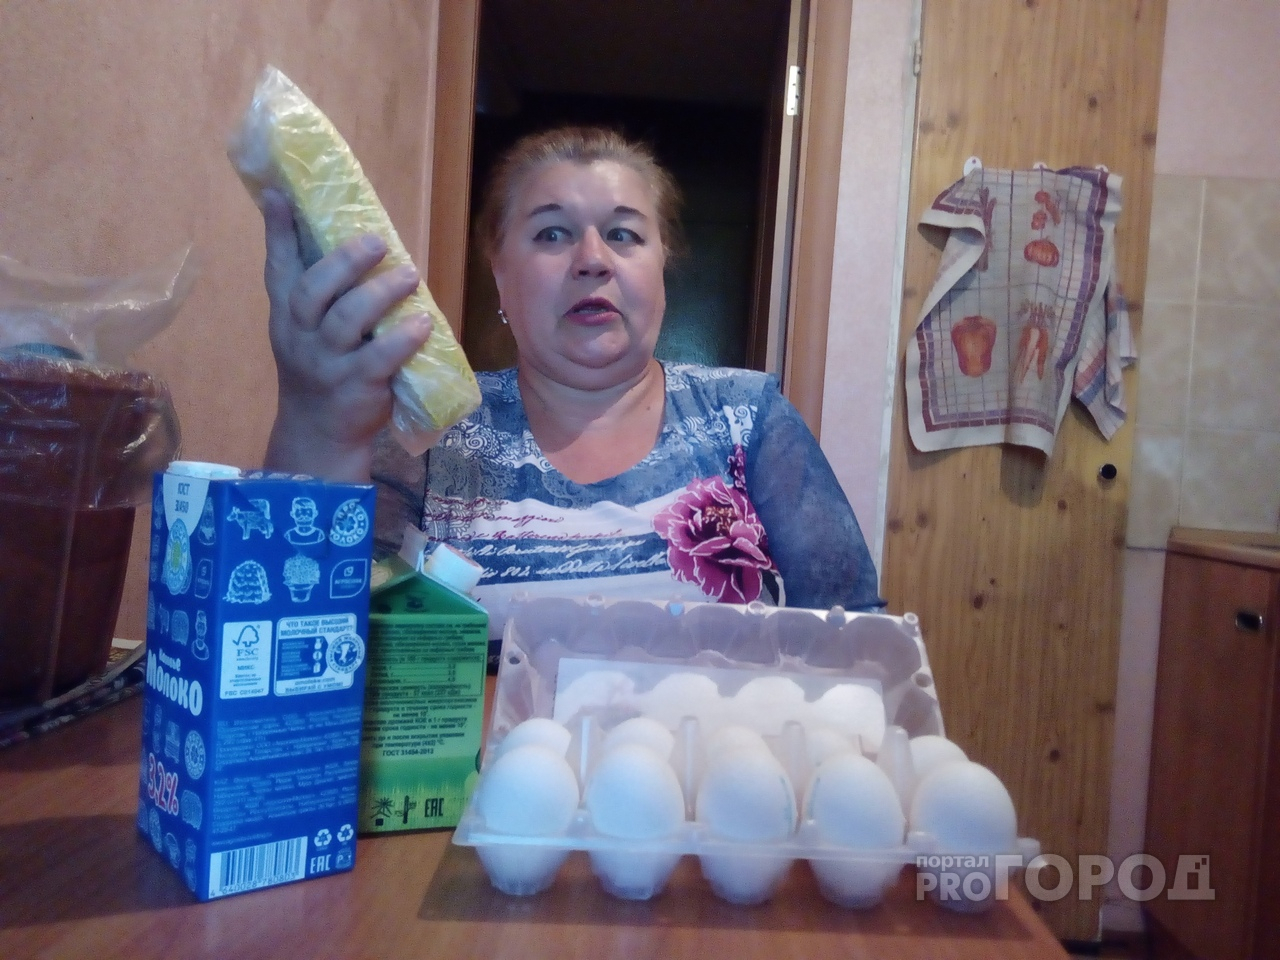 "Масло для меня роскошь": назвали среднюю пенсию в Ярославле